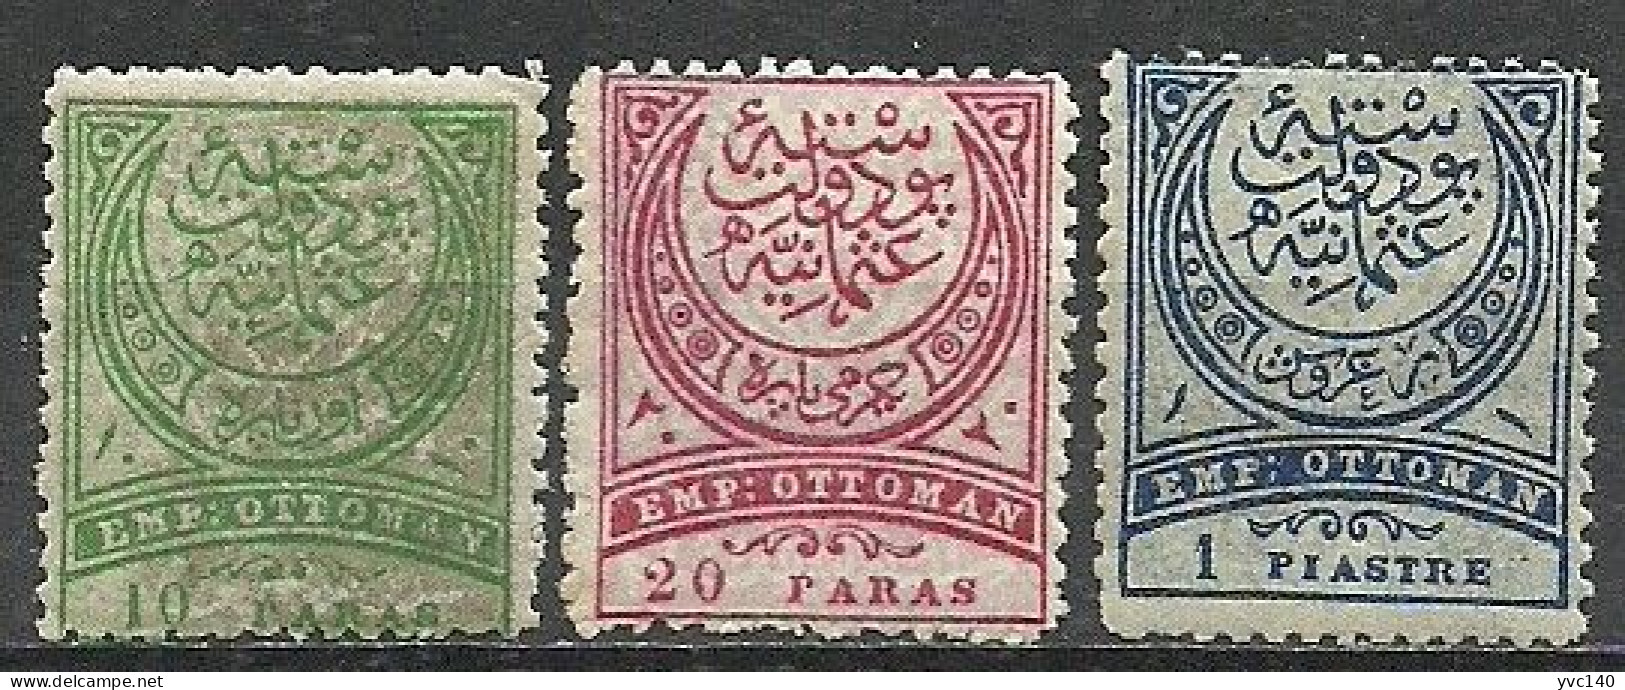 Turkey; 1884 Crescent Postage Stamps Perf. 13 1/4 (Complete Set) - Ongebruikt